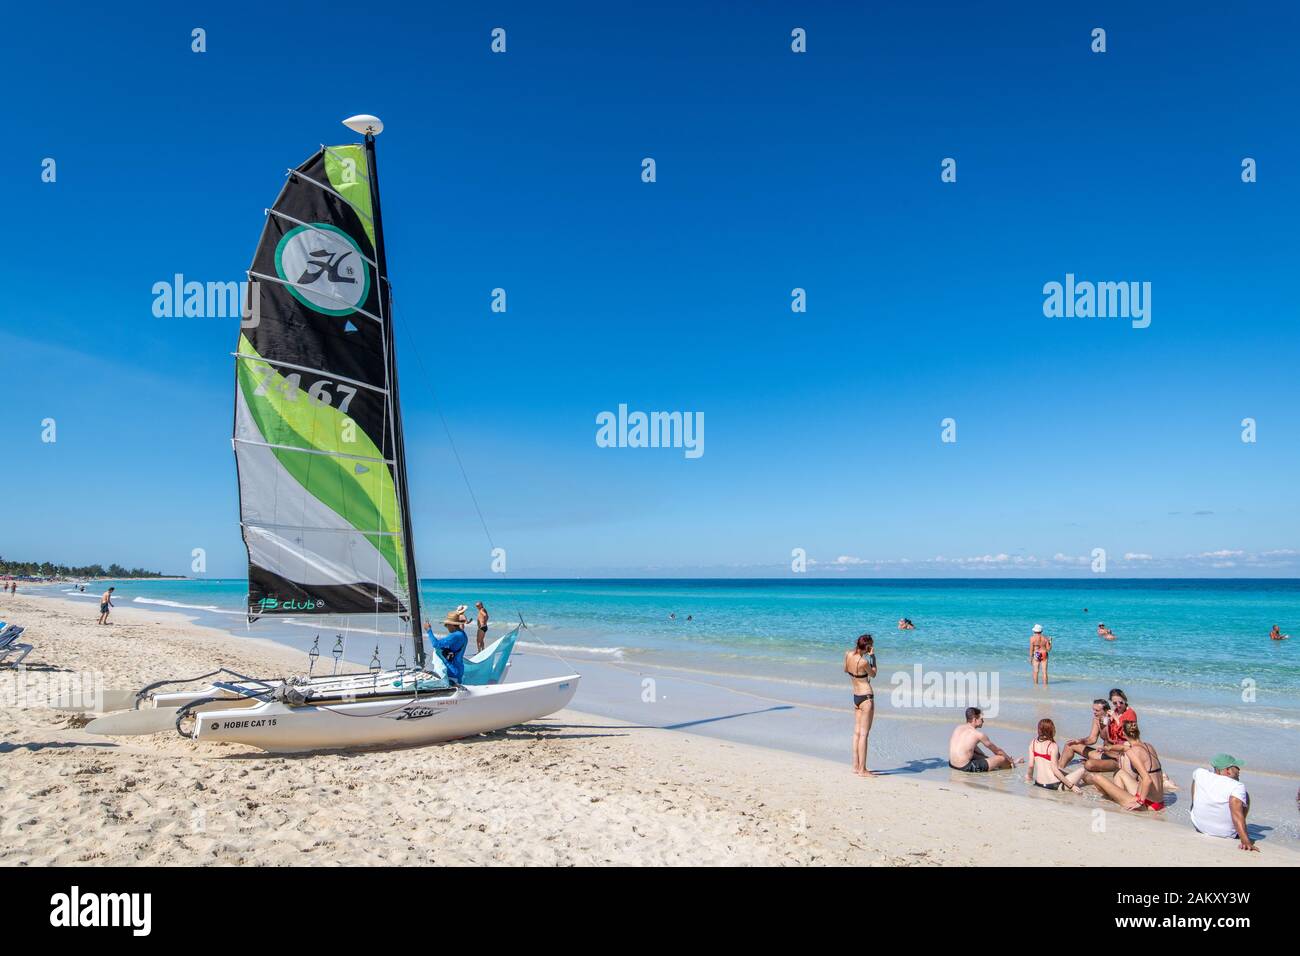 Einen kleinen Katamaran Vorbereitung von Santa Maria del Mar Beach, Havanna, Kuba aufgerufen werden kann. Stockfoto